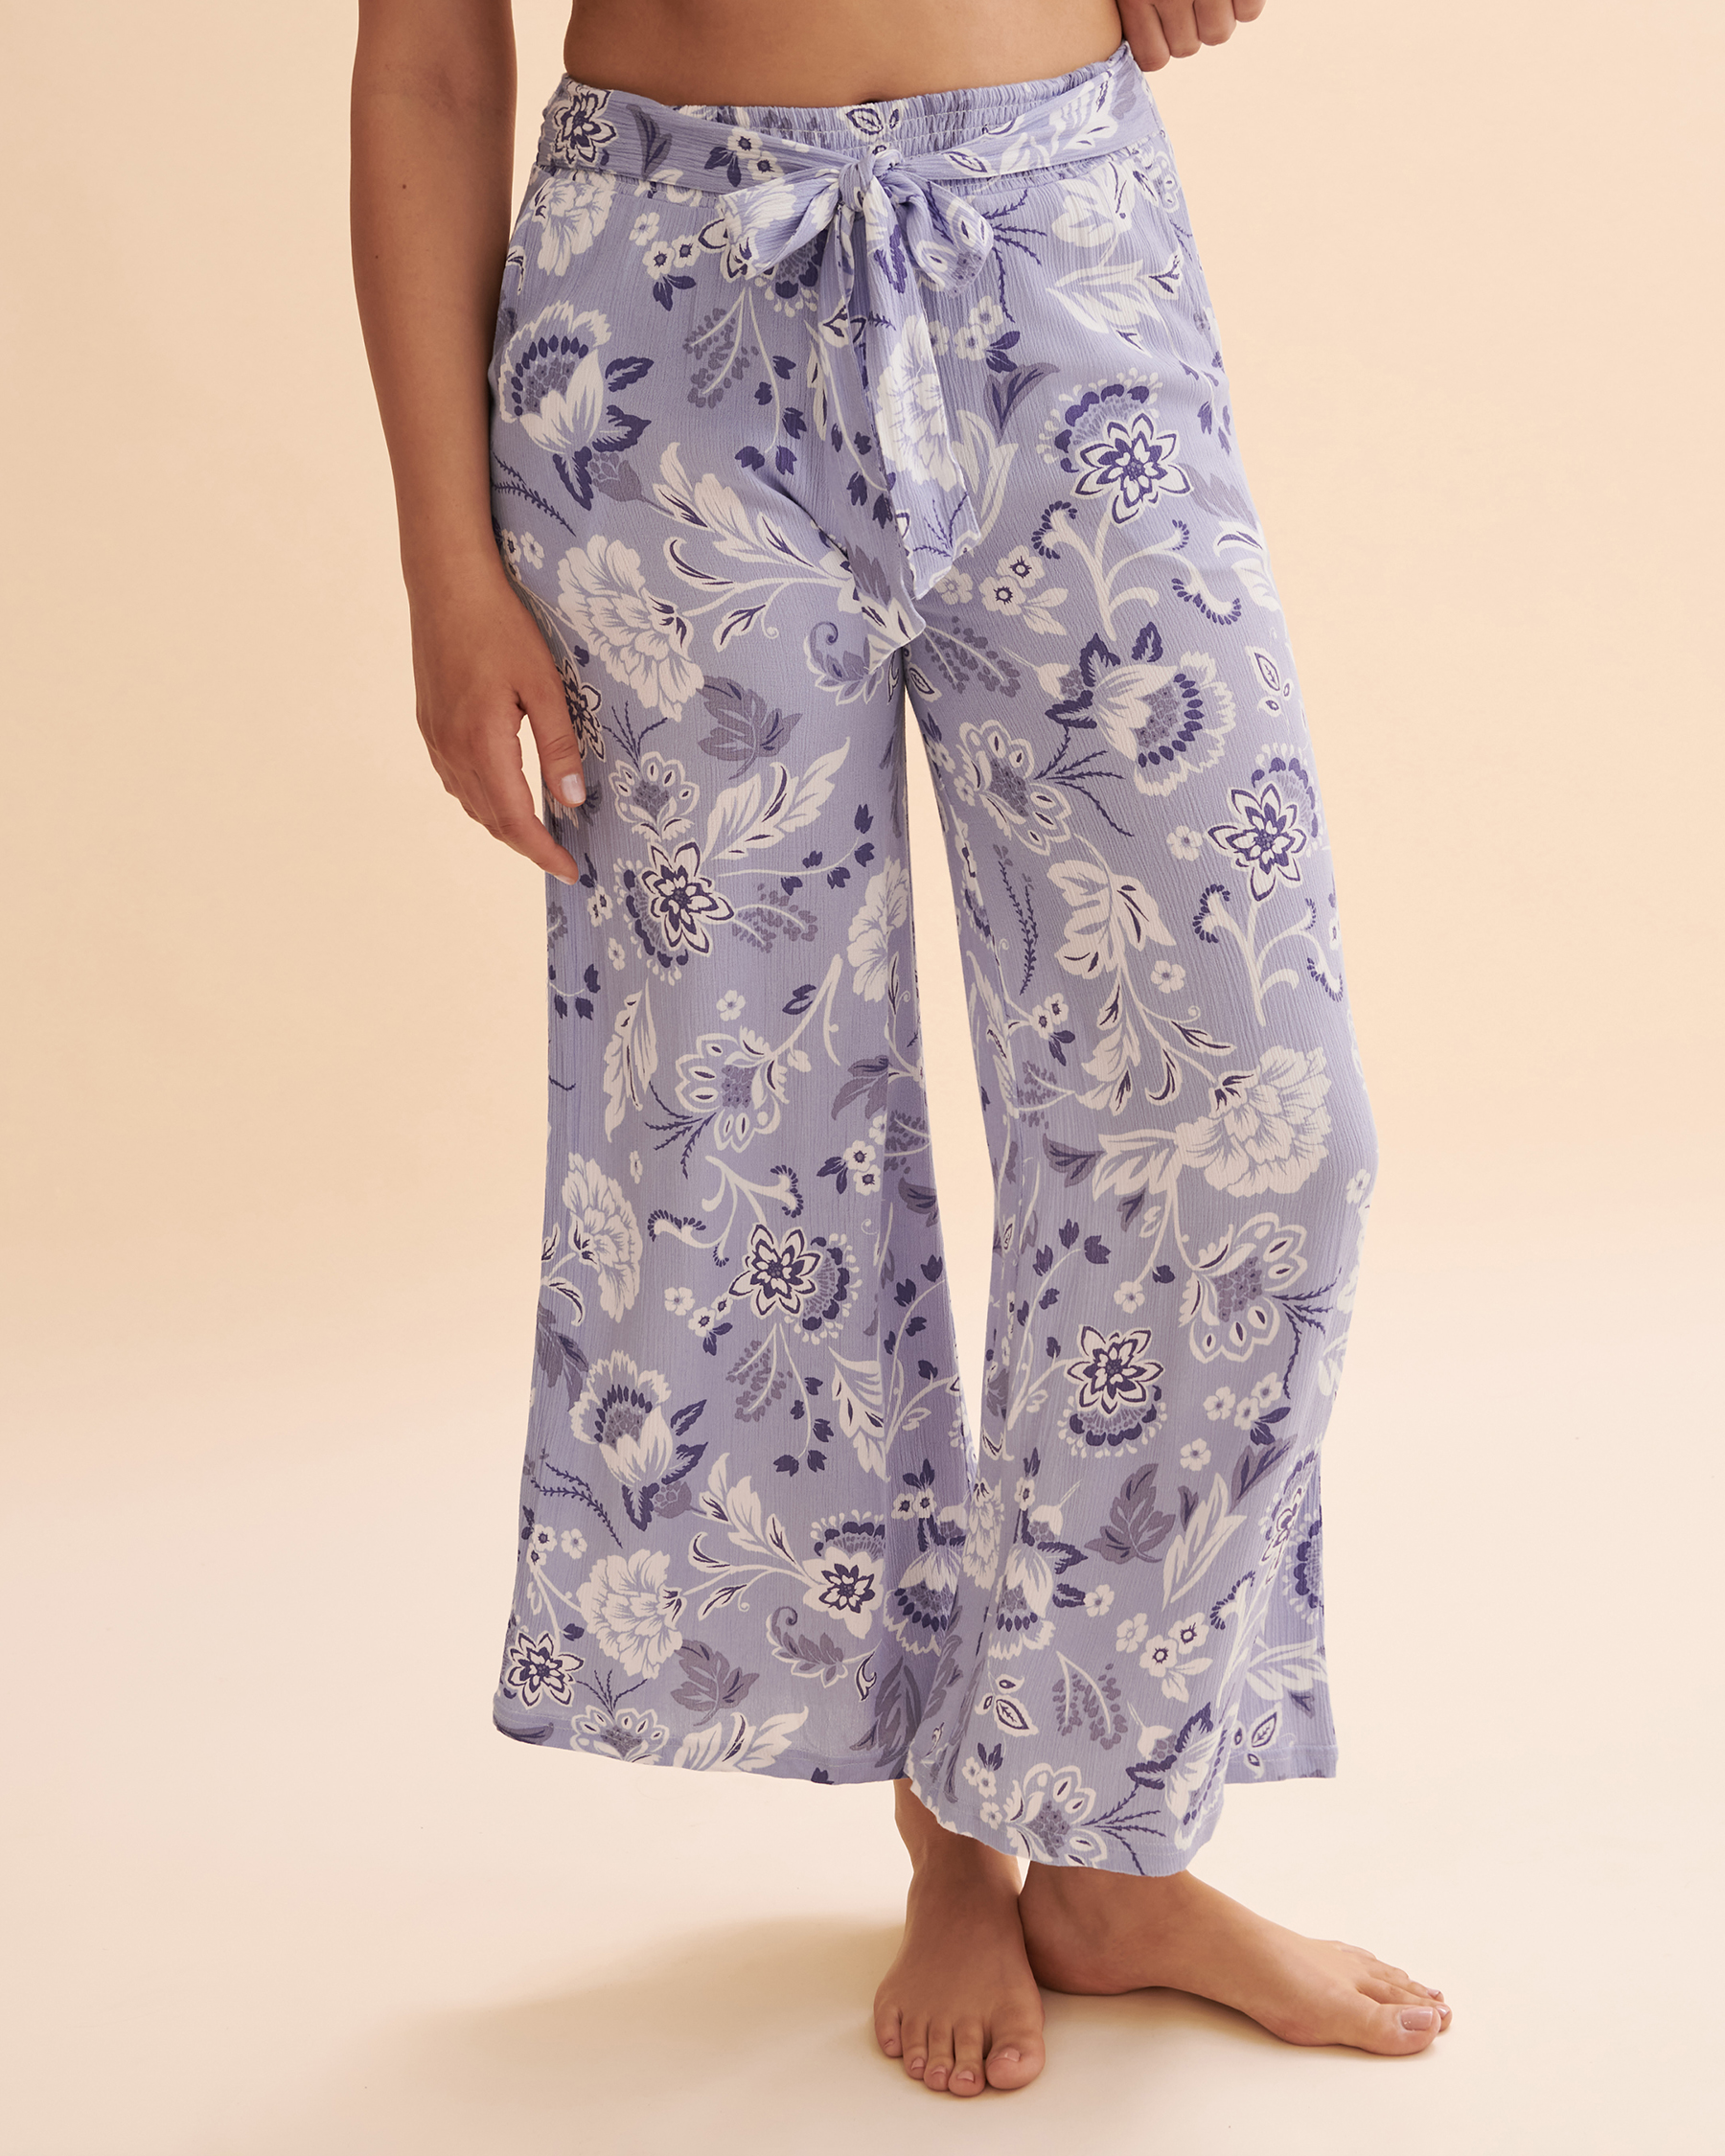 TURQUOISE COUTURE Pantalon jambe large Blue Floral Bleu clair floral 02200044 - Voir4